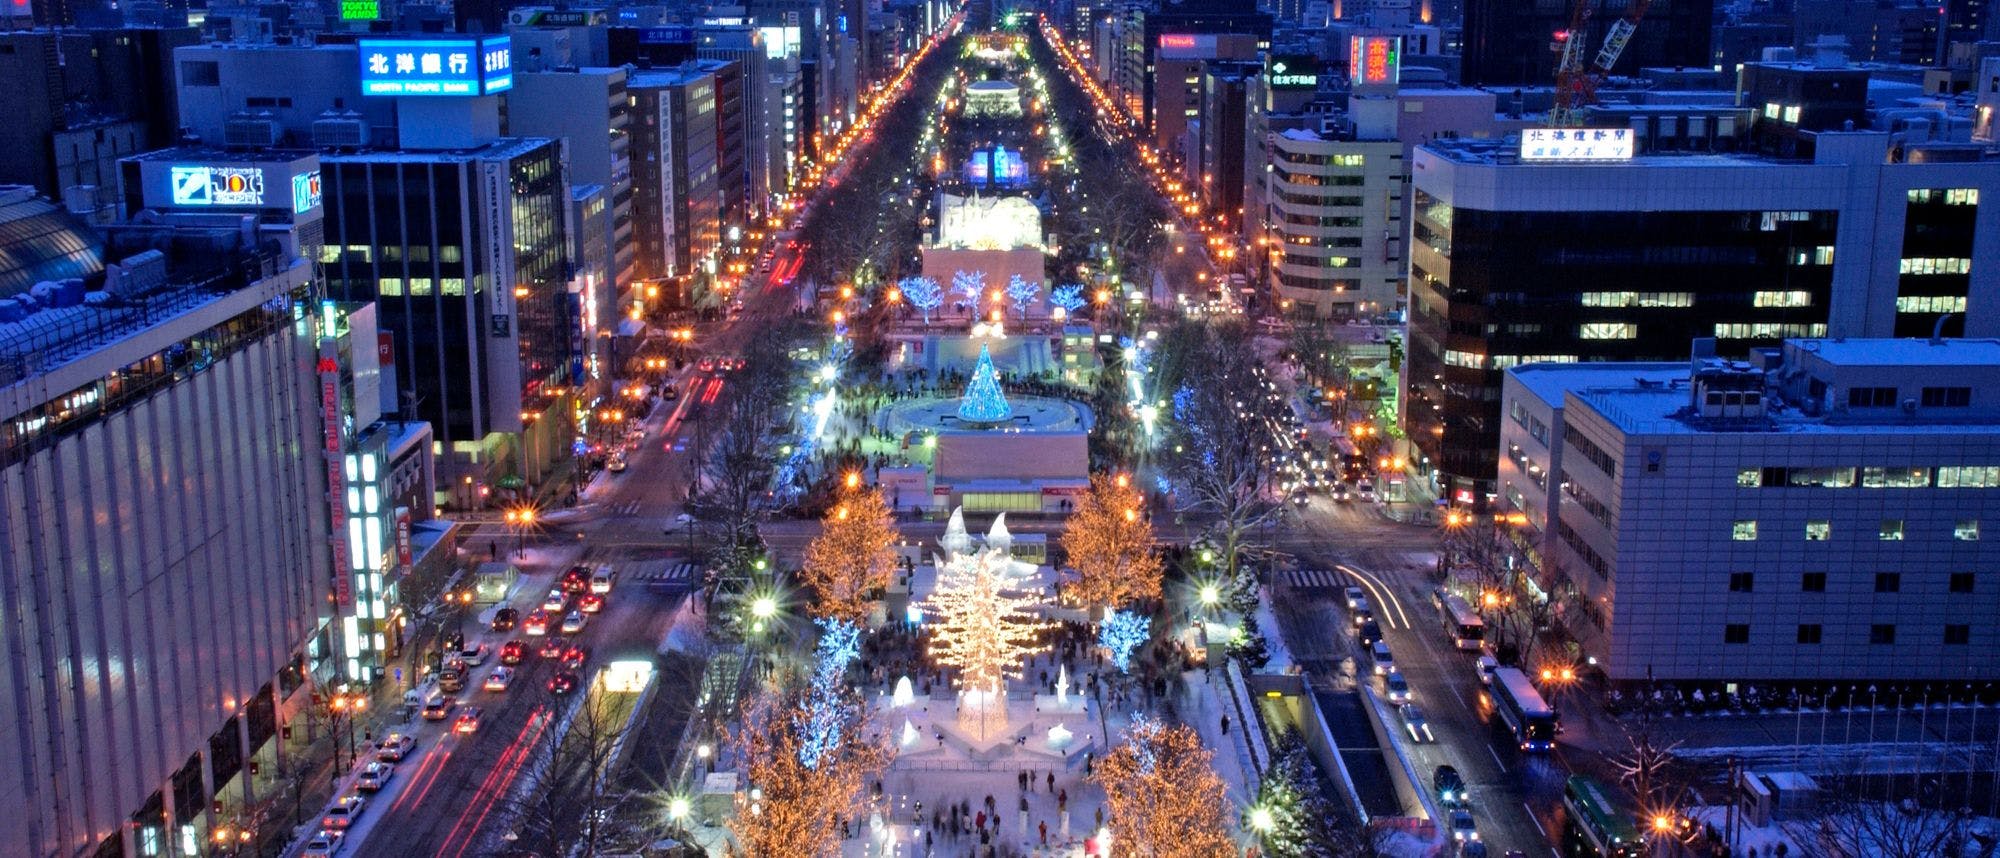 Odori Park during the Sapporo Snow Festival